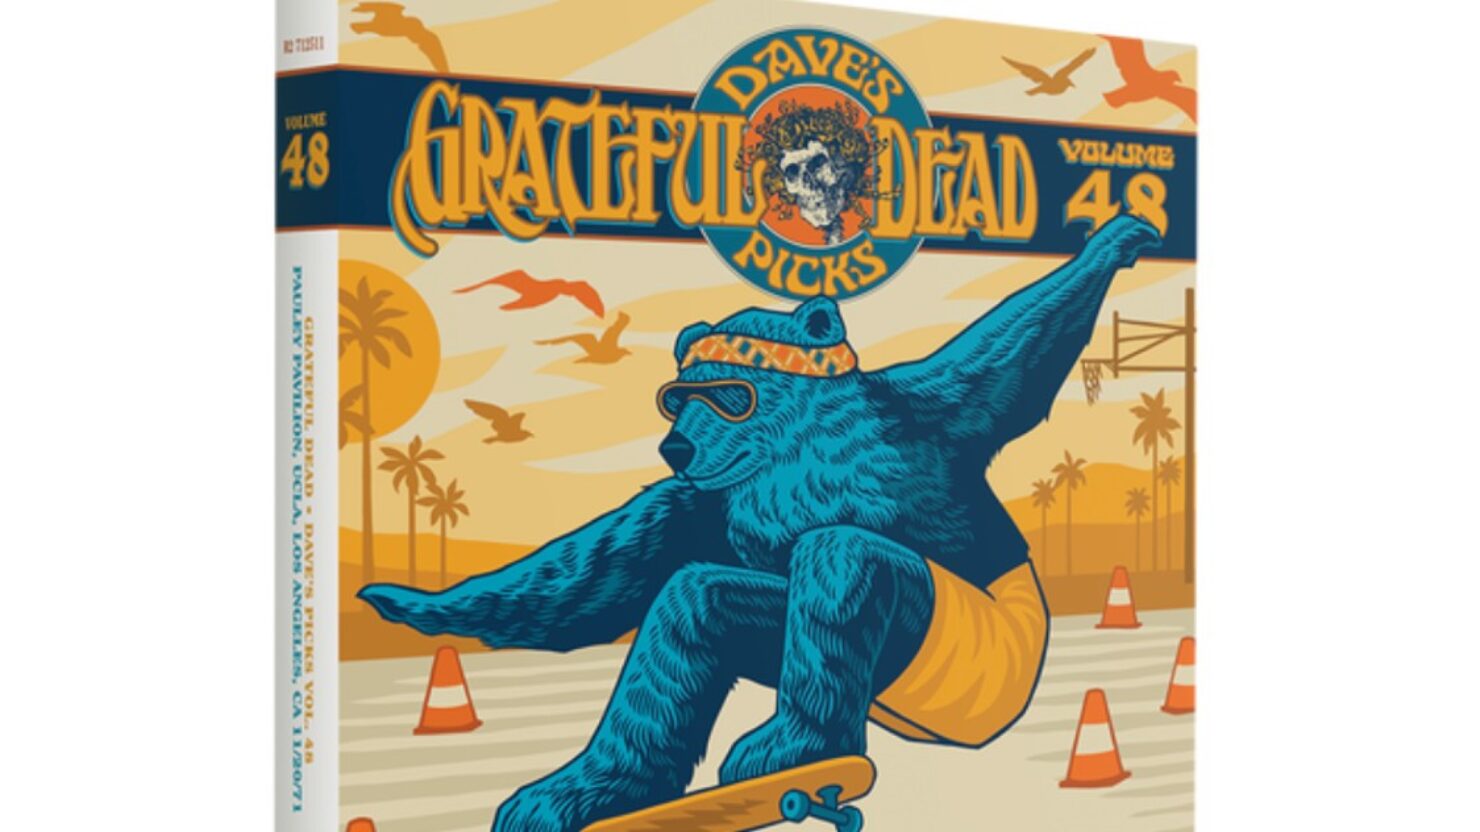 Grateful Dead "Dave's Picks Volume 48" présente les débuts au Pavillon Pauley approuvés par Bill Walton à partir de 1971